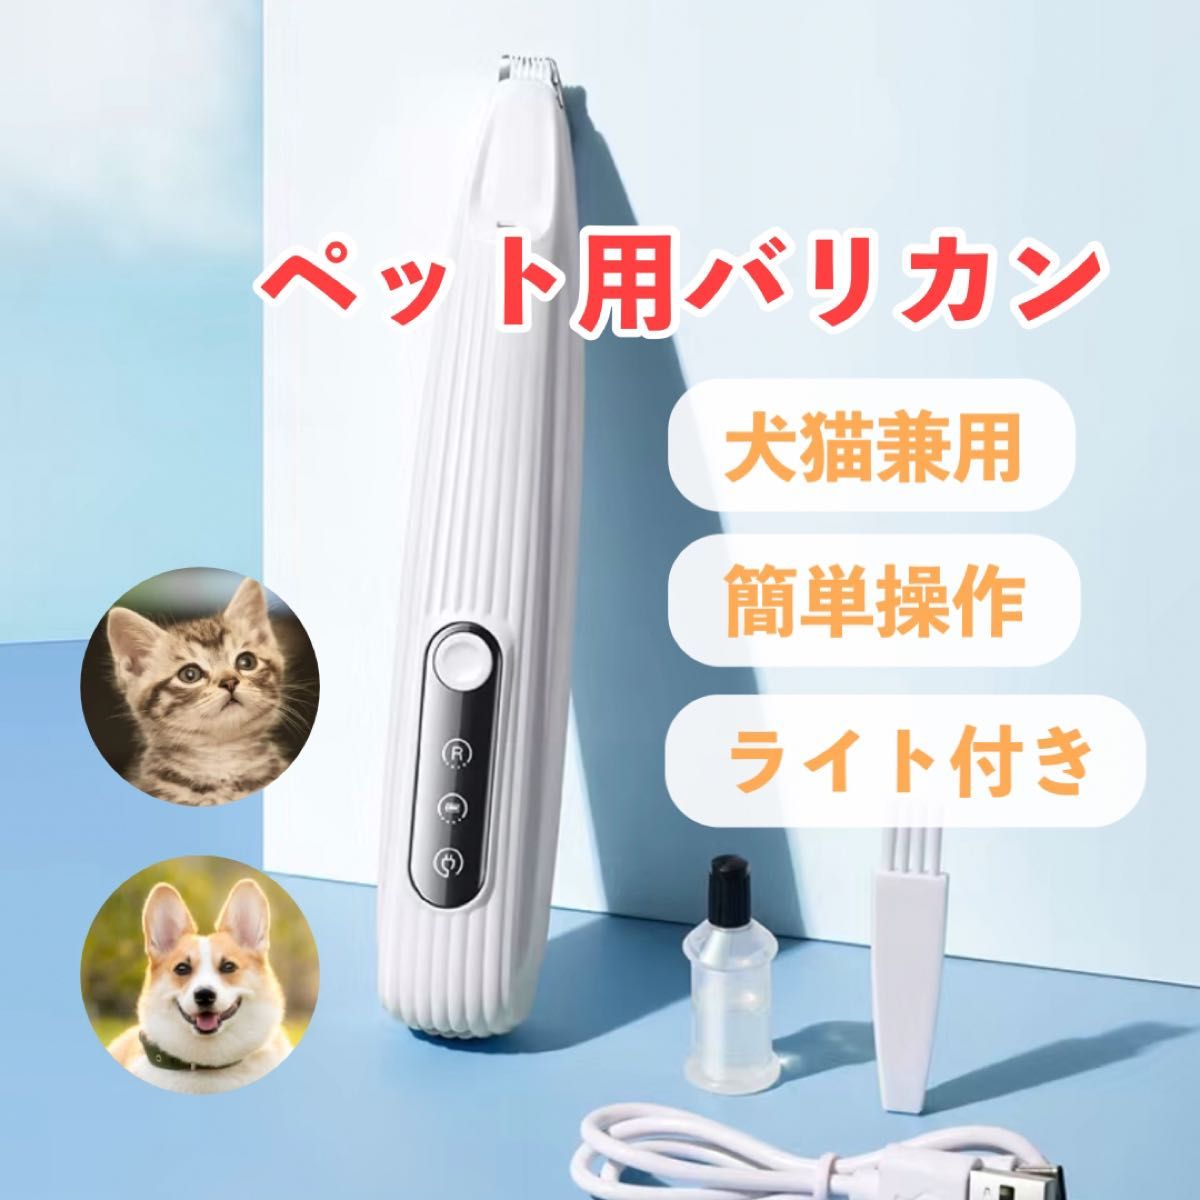 新品 充電式 電池残量表示 ペット用 バリカン ライト付き、部分カット 犬 猫 自宅お手入れトリミング イヌ ネコ用シェーバー 